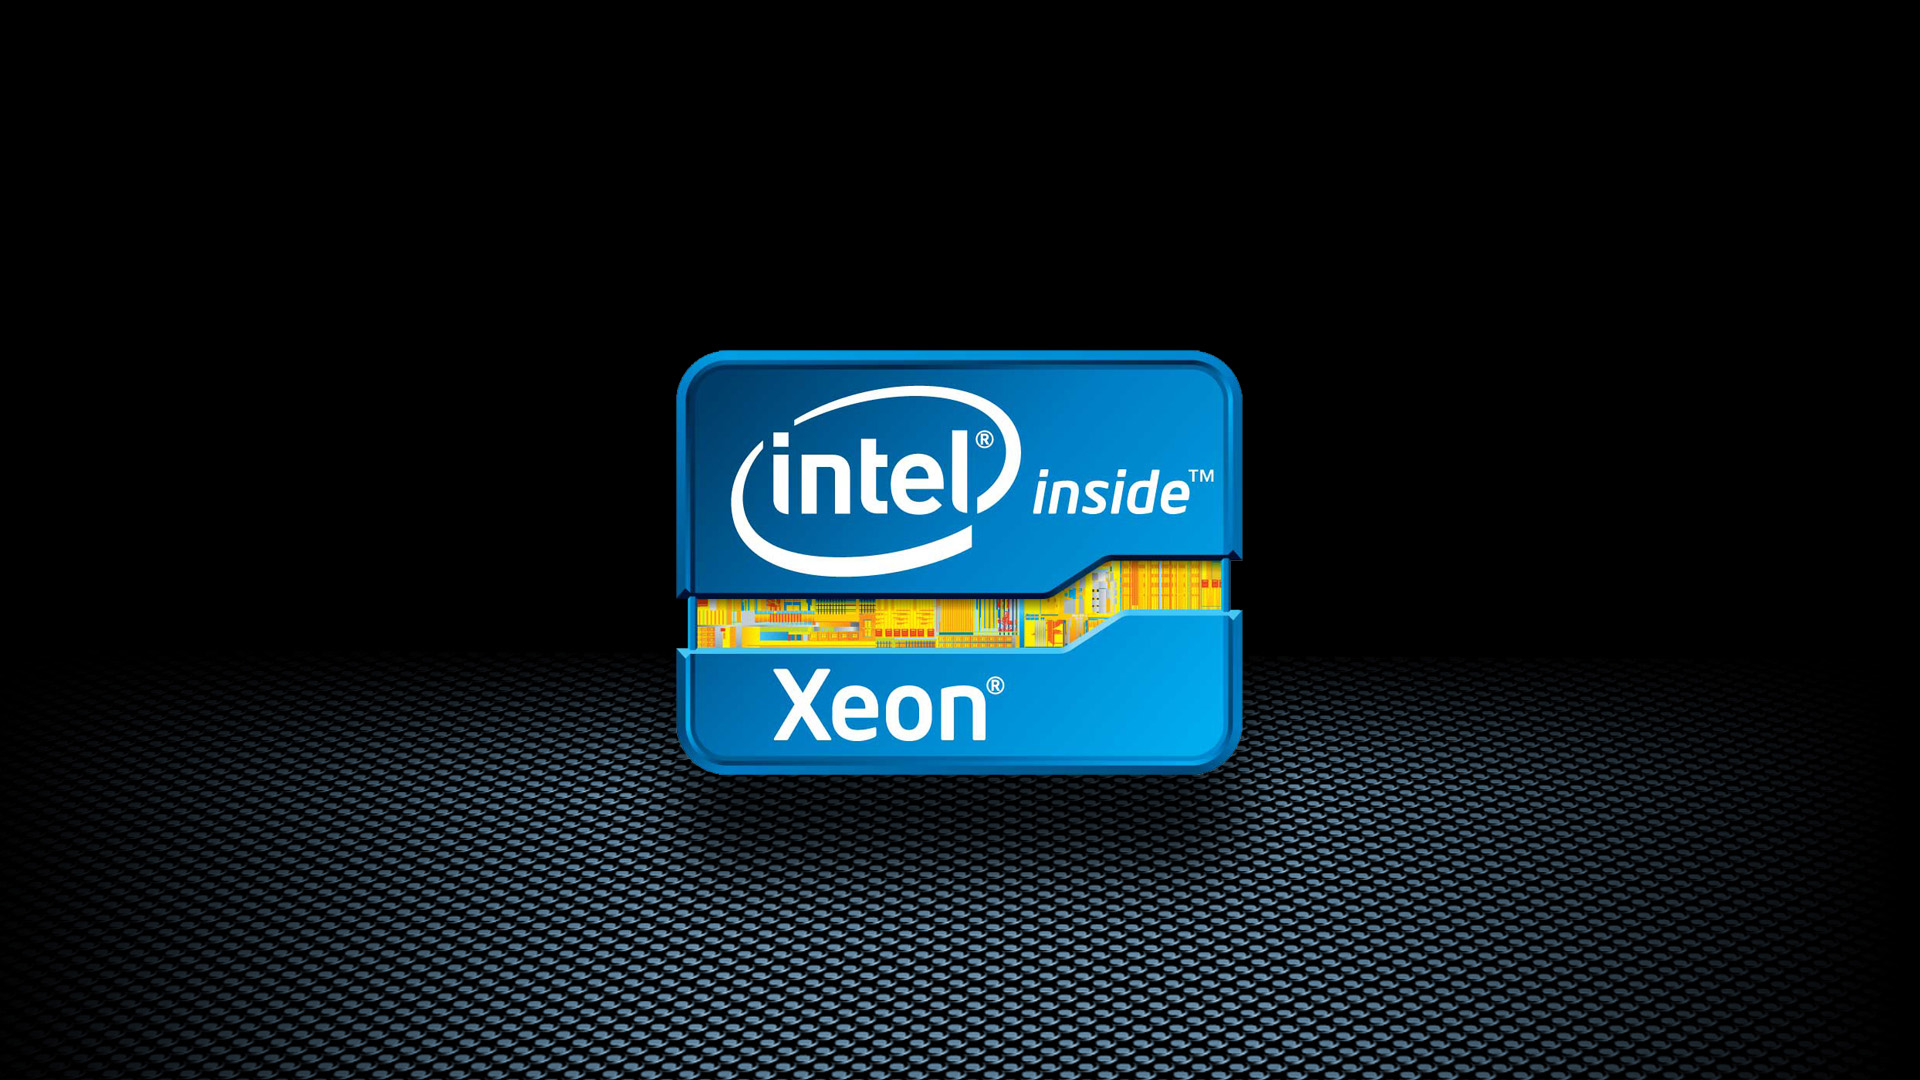 Hogans Intel Quad Xeon I5 I7 Wallpapers 1920 x 1080 1920 x